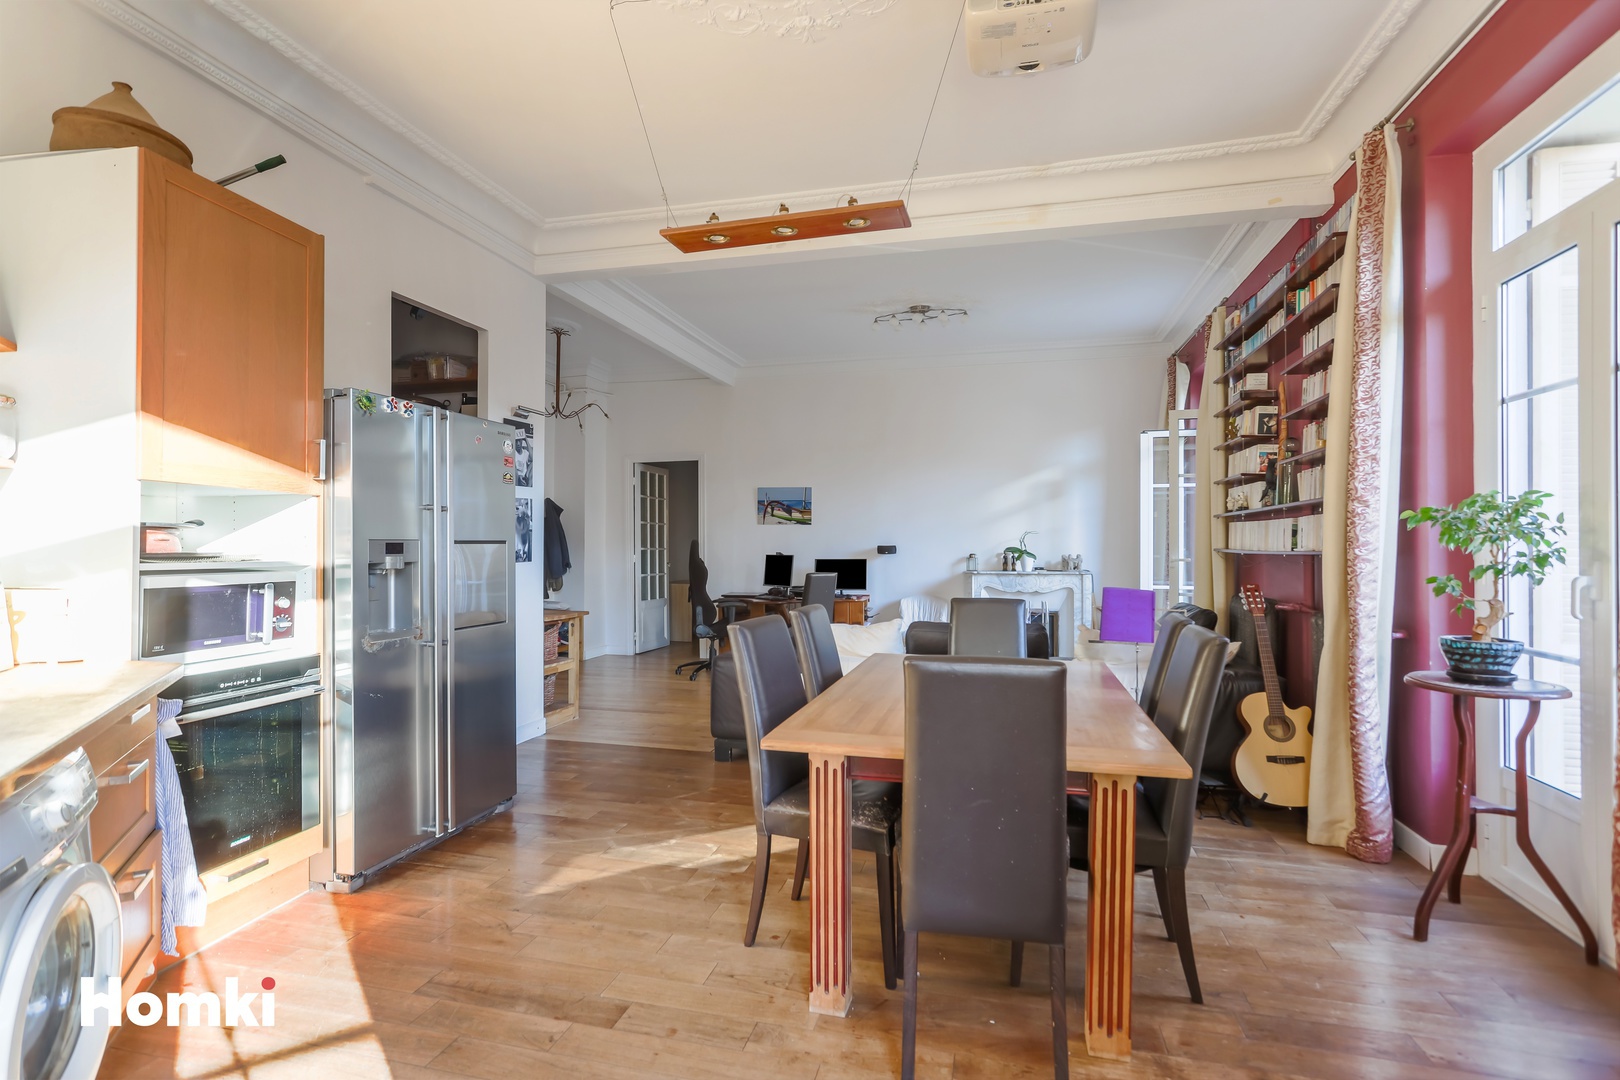 Homki - Vente Appartement  de 129.91 m² à Nice 06000